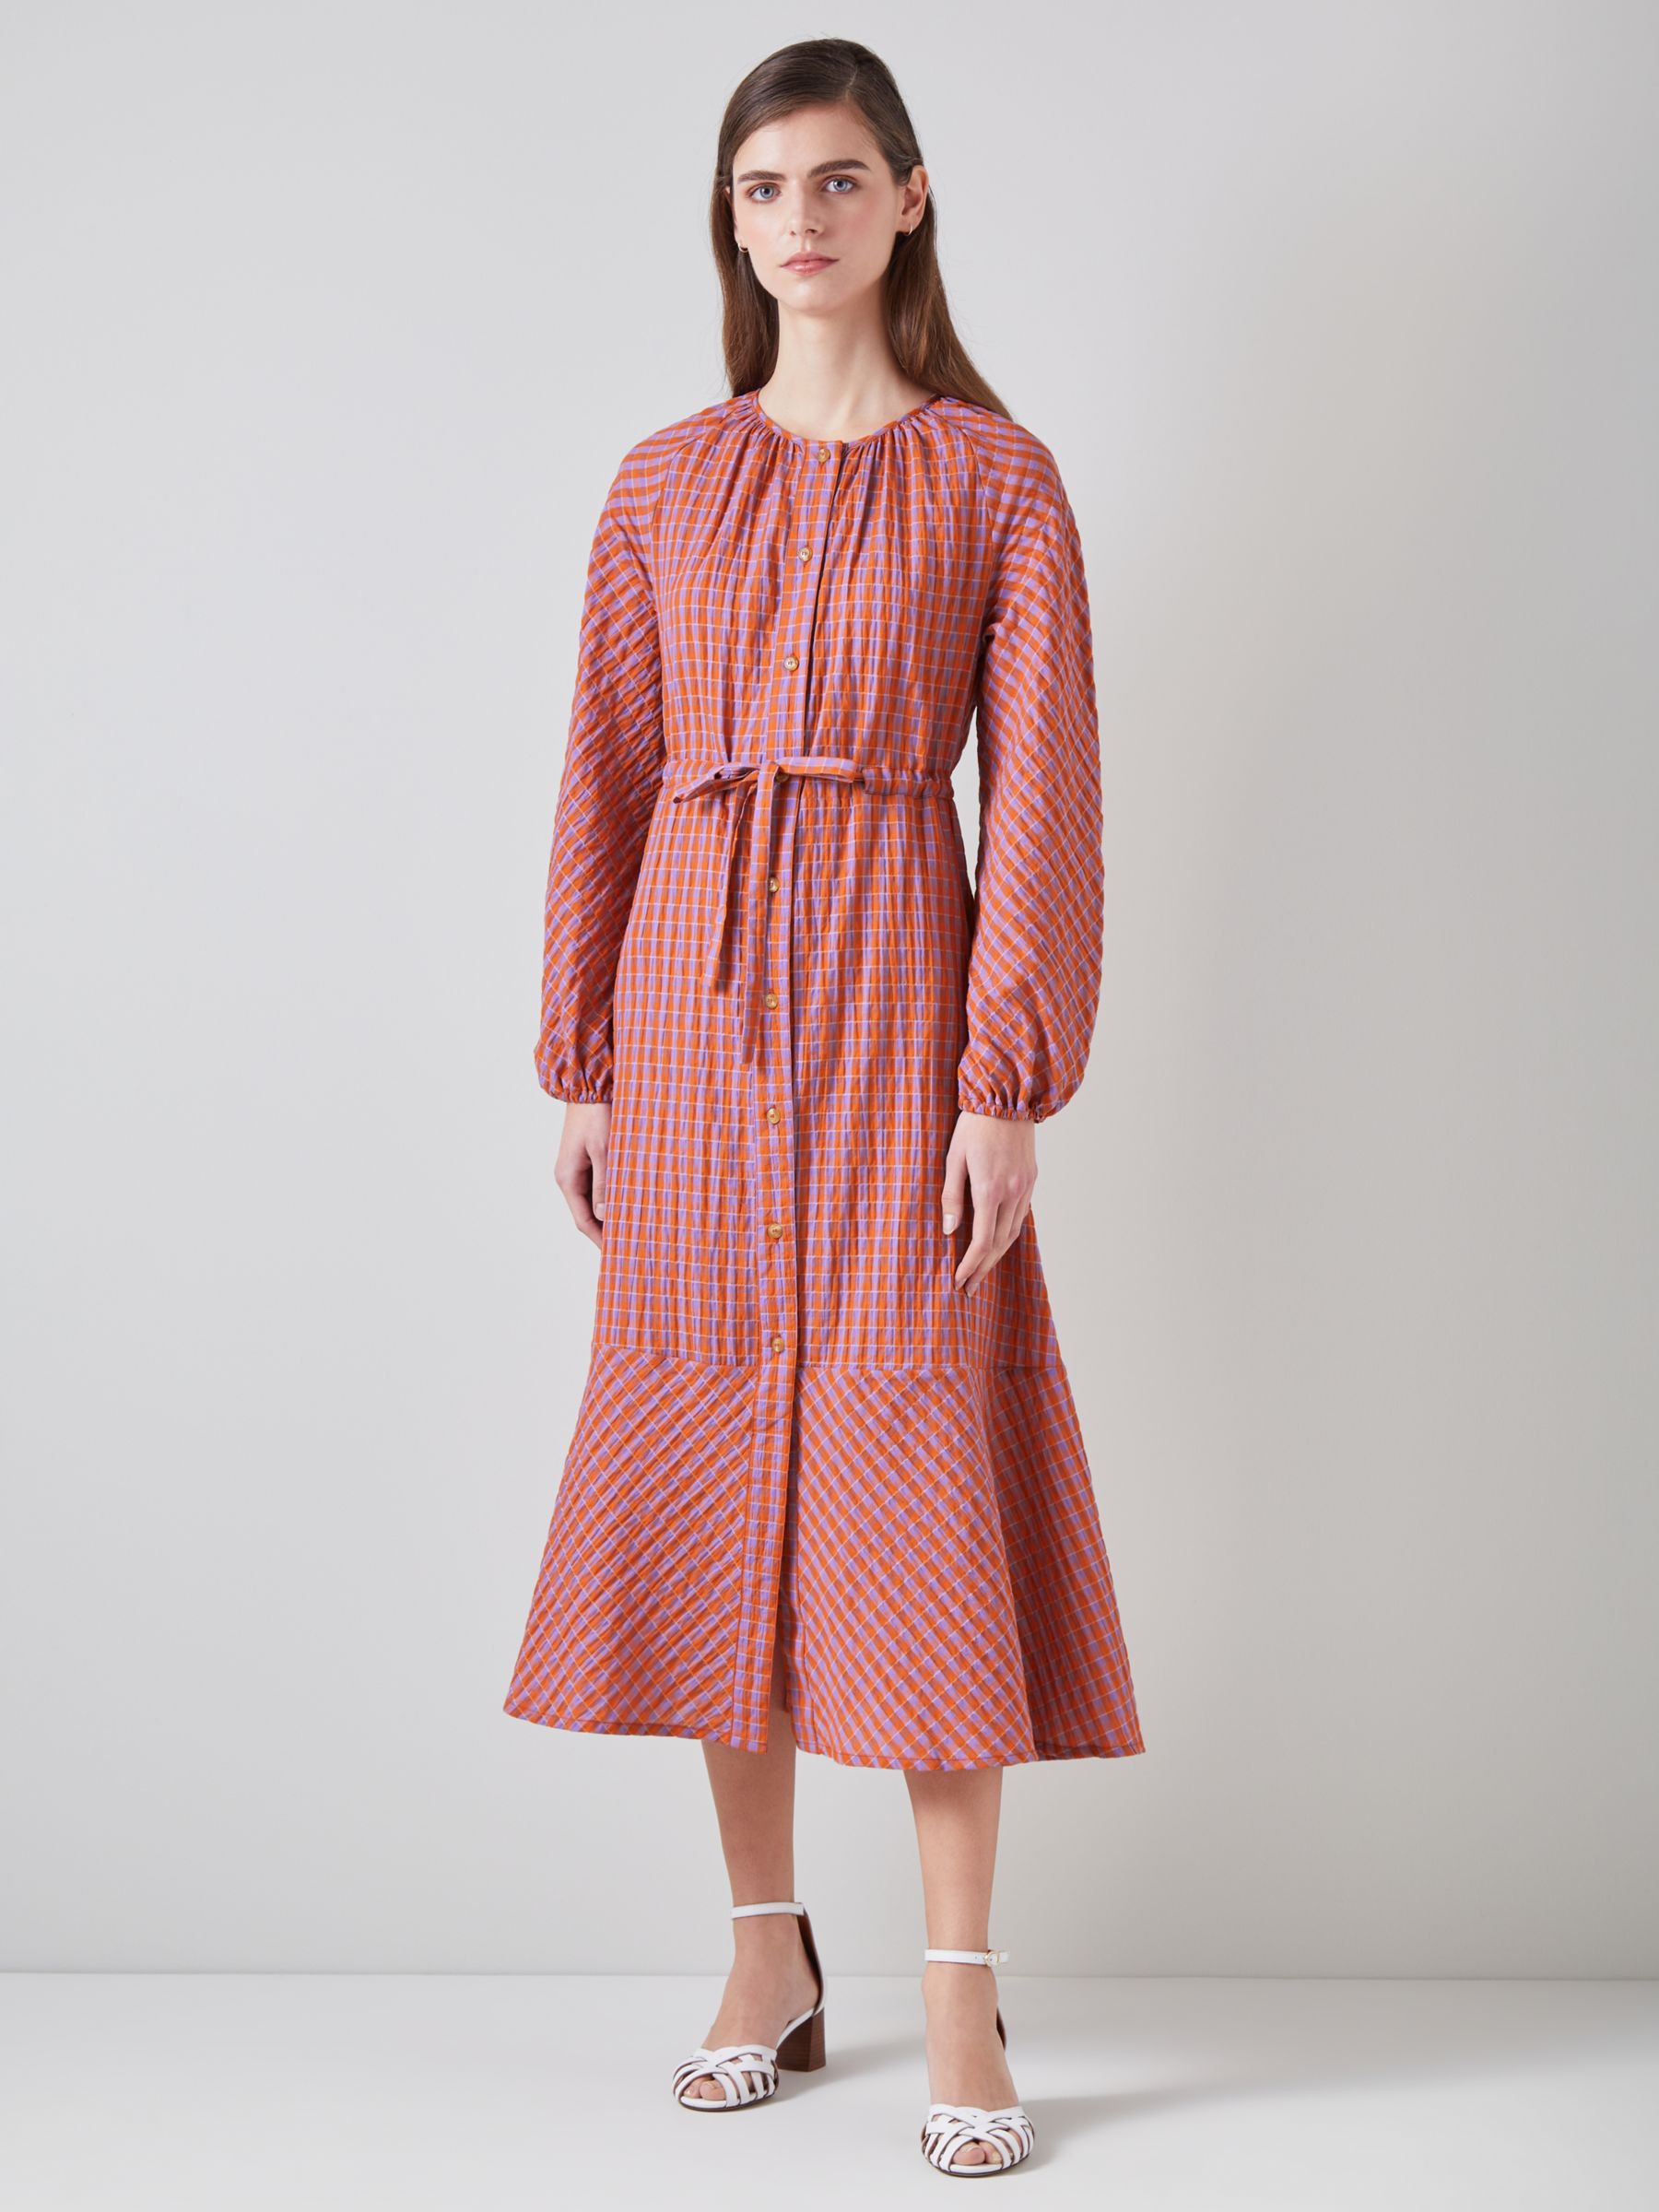 L.K.Bennett Sophie Seersucker Textured Check Midi Dress, Orange/Purple, 16